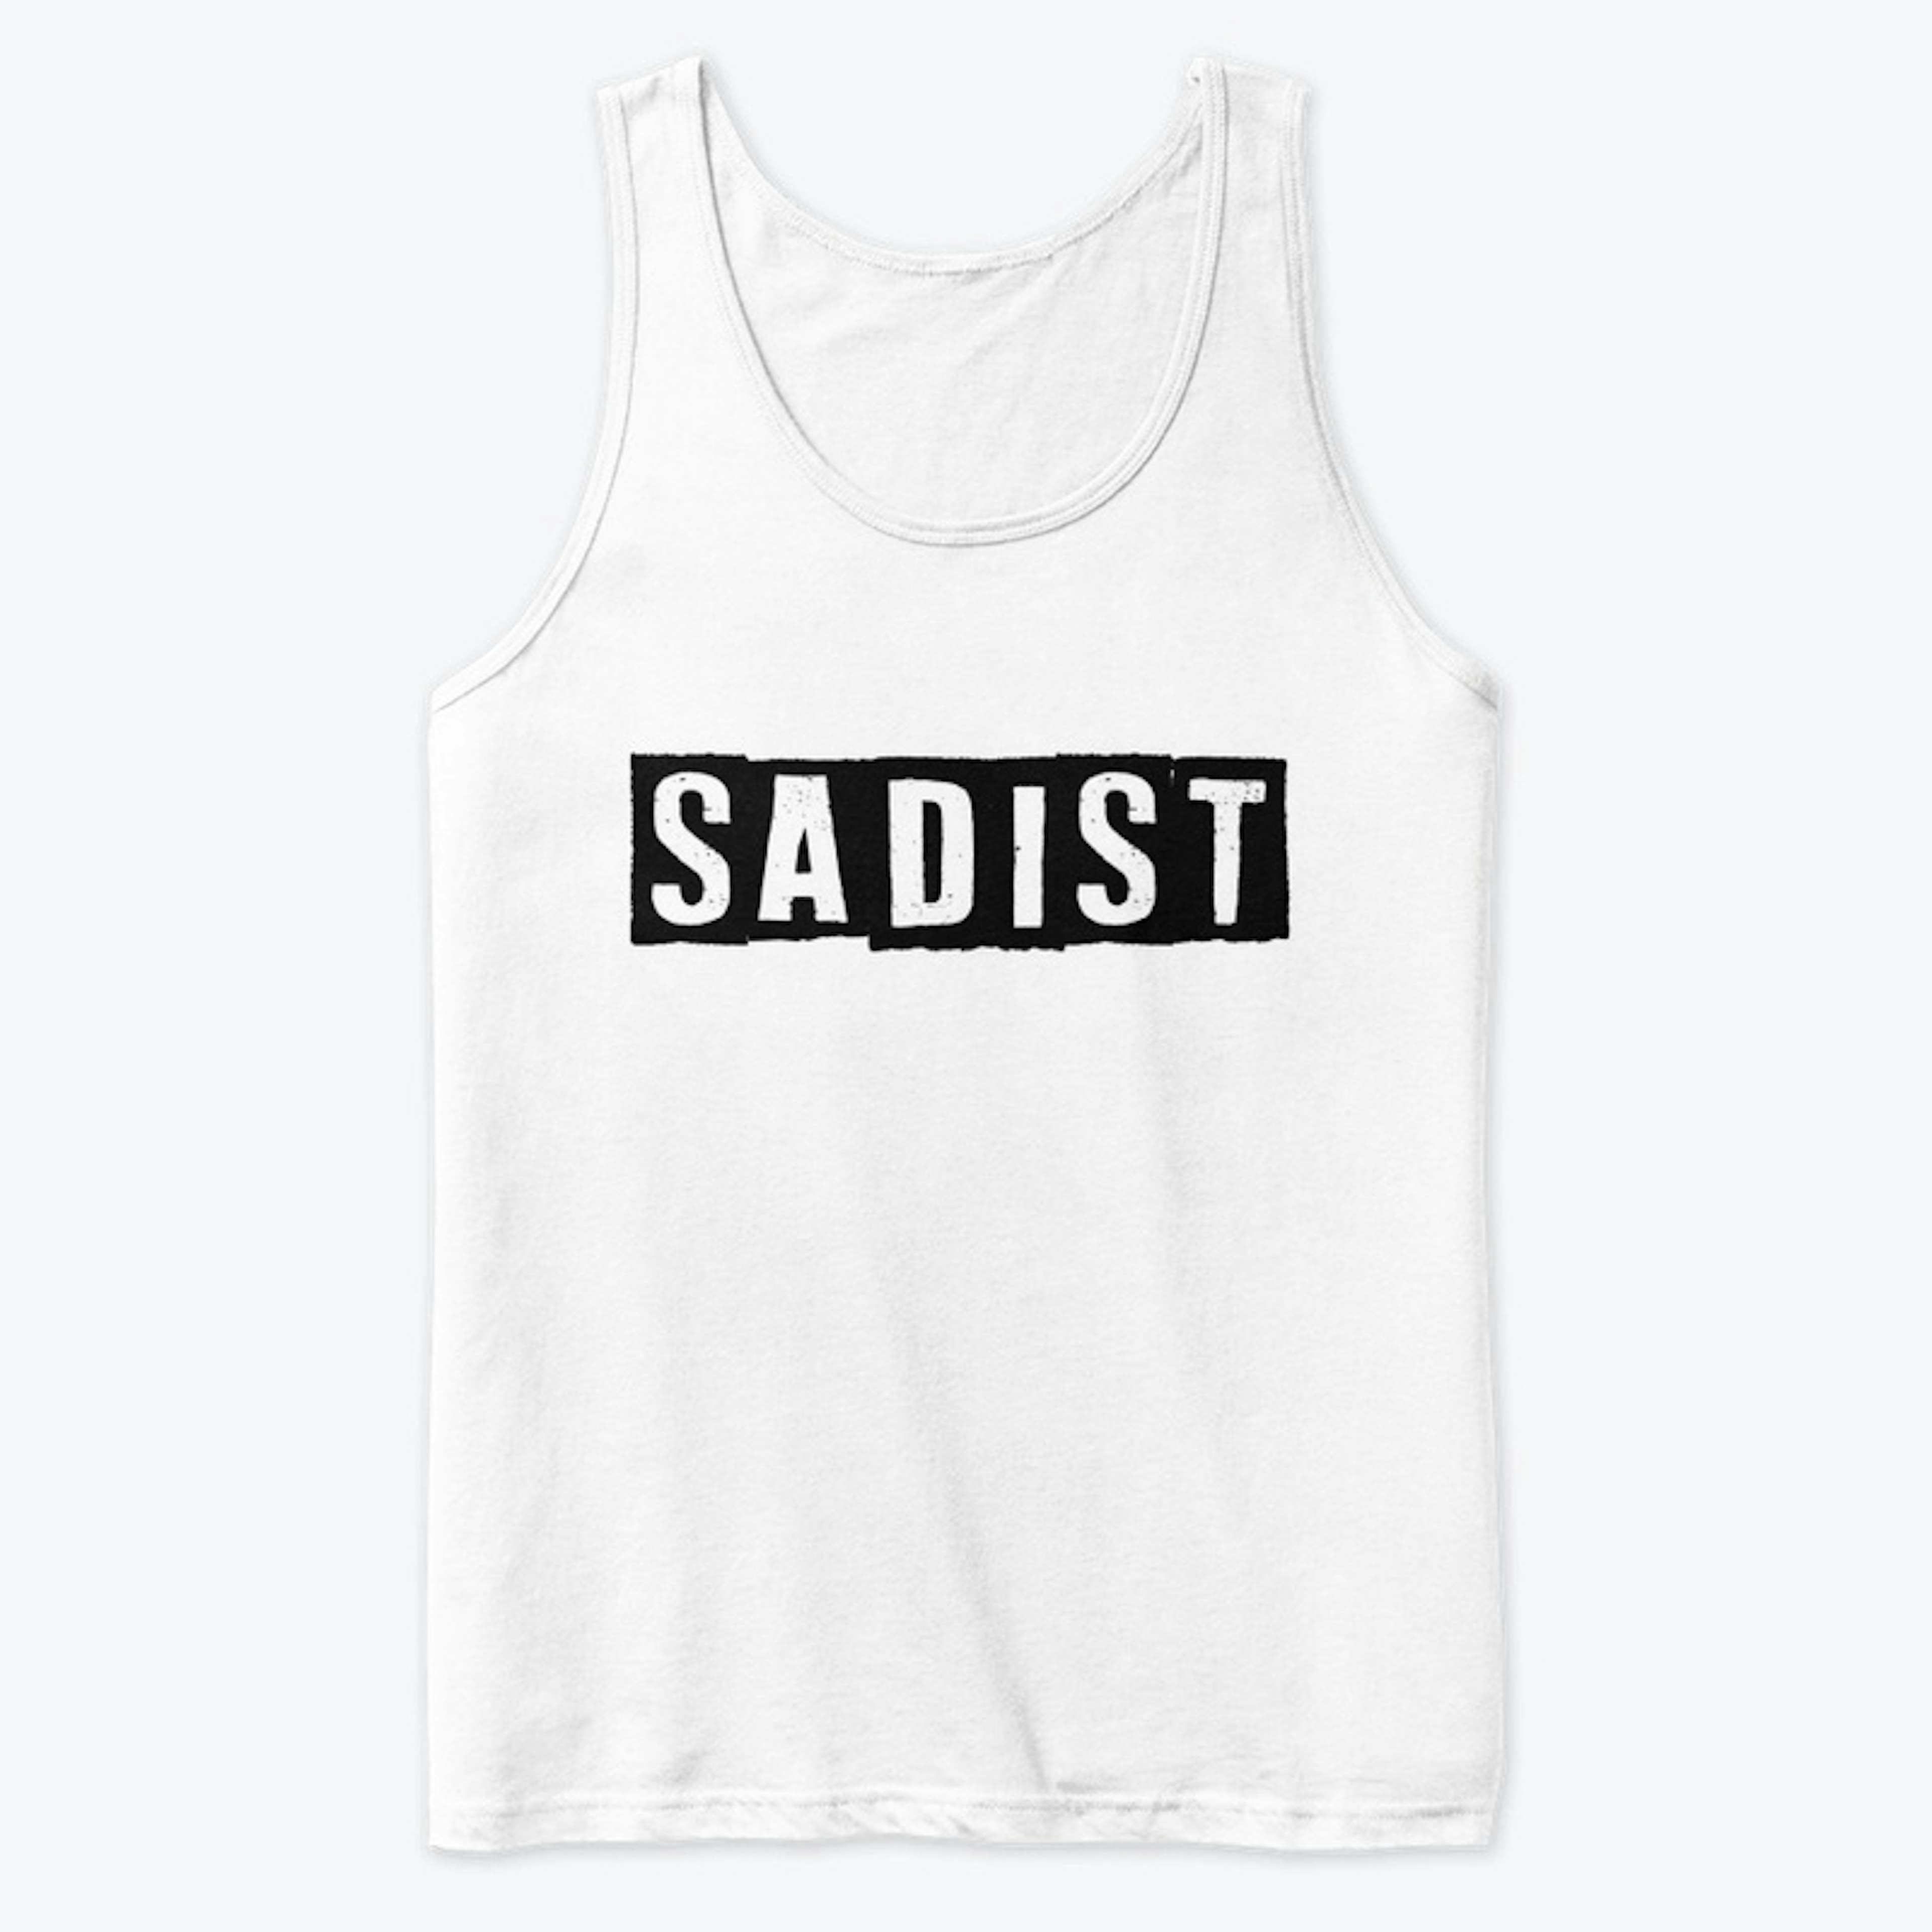 Sadist (white)